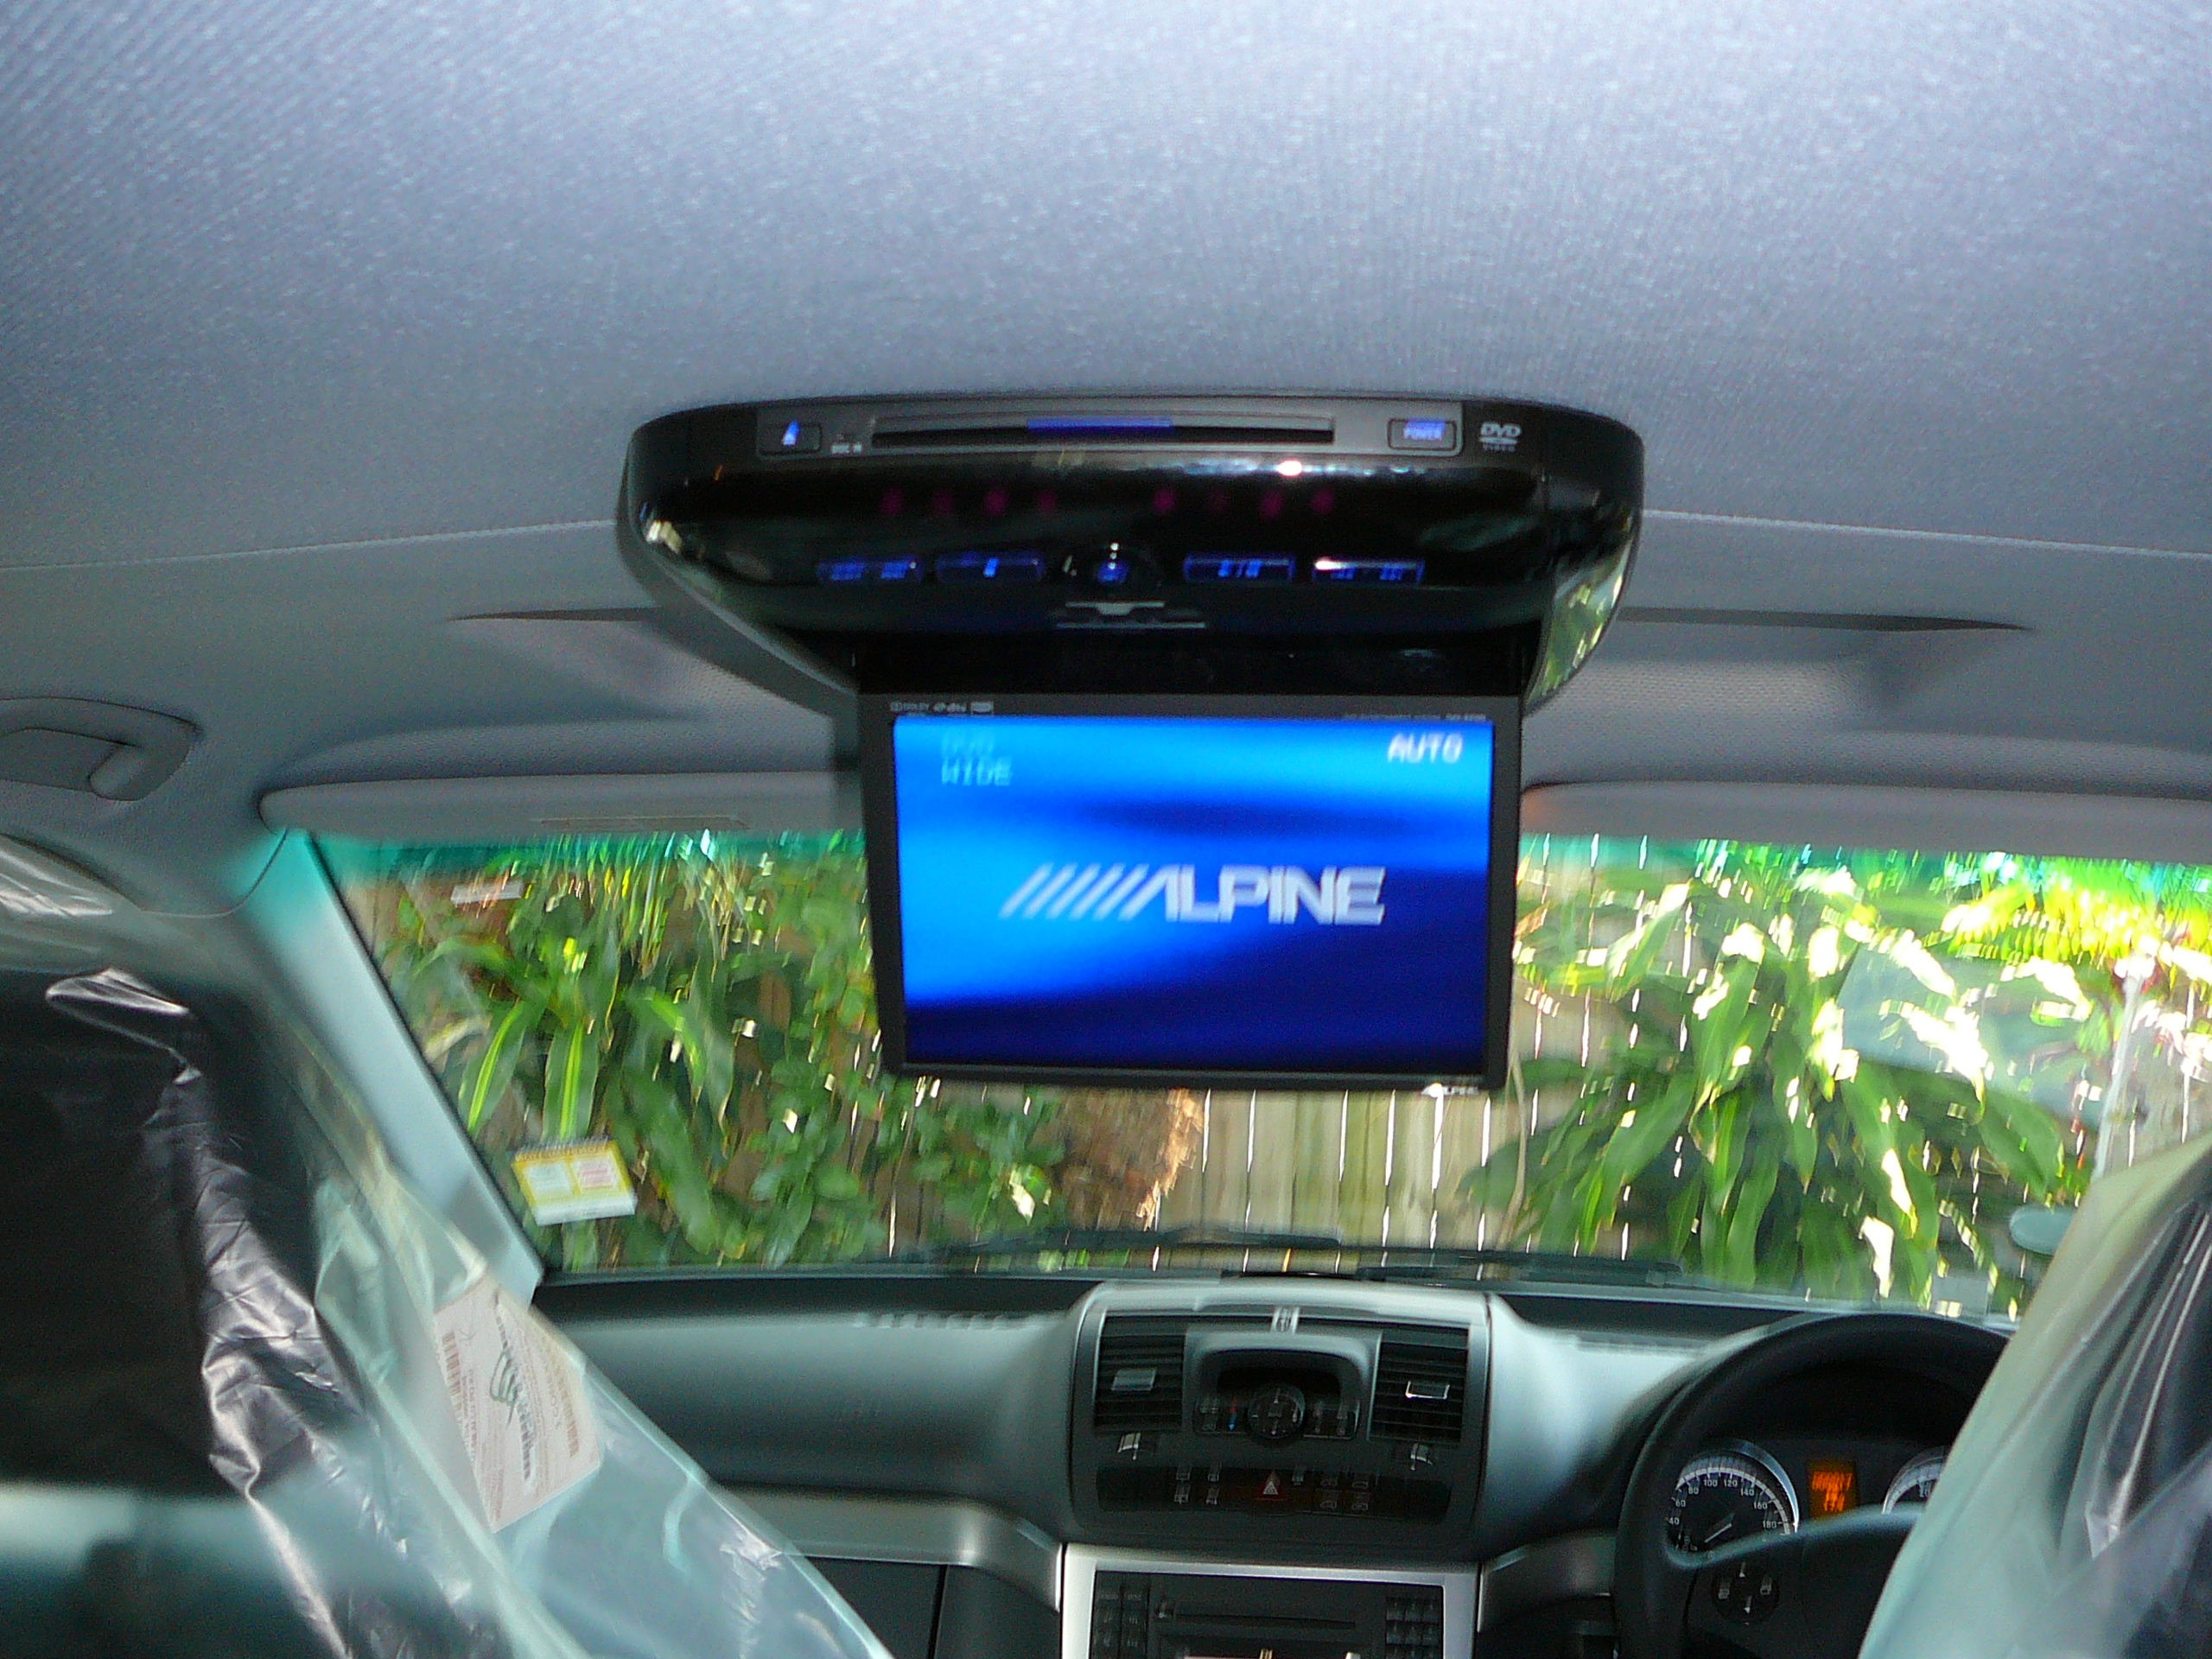 Mercedes Benz Viano 2012, Alpine DVD Roof Screen PKG-2100P Installation